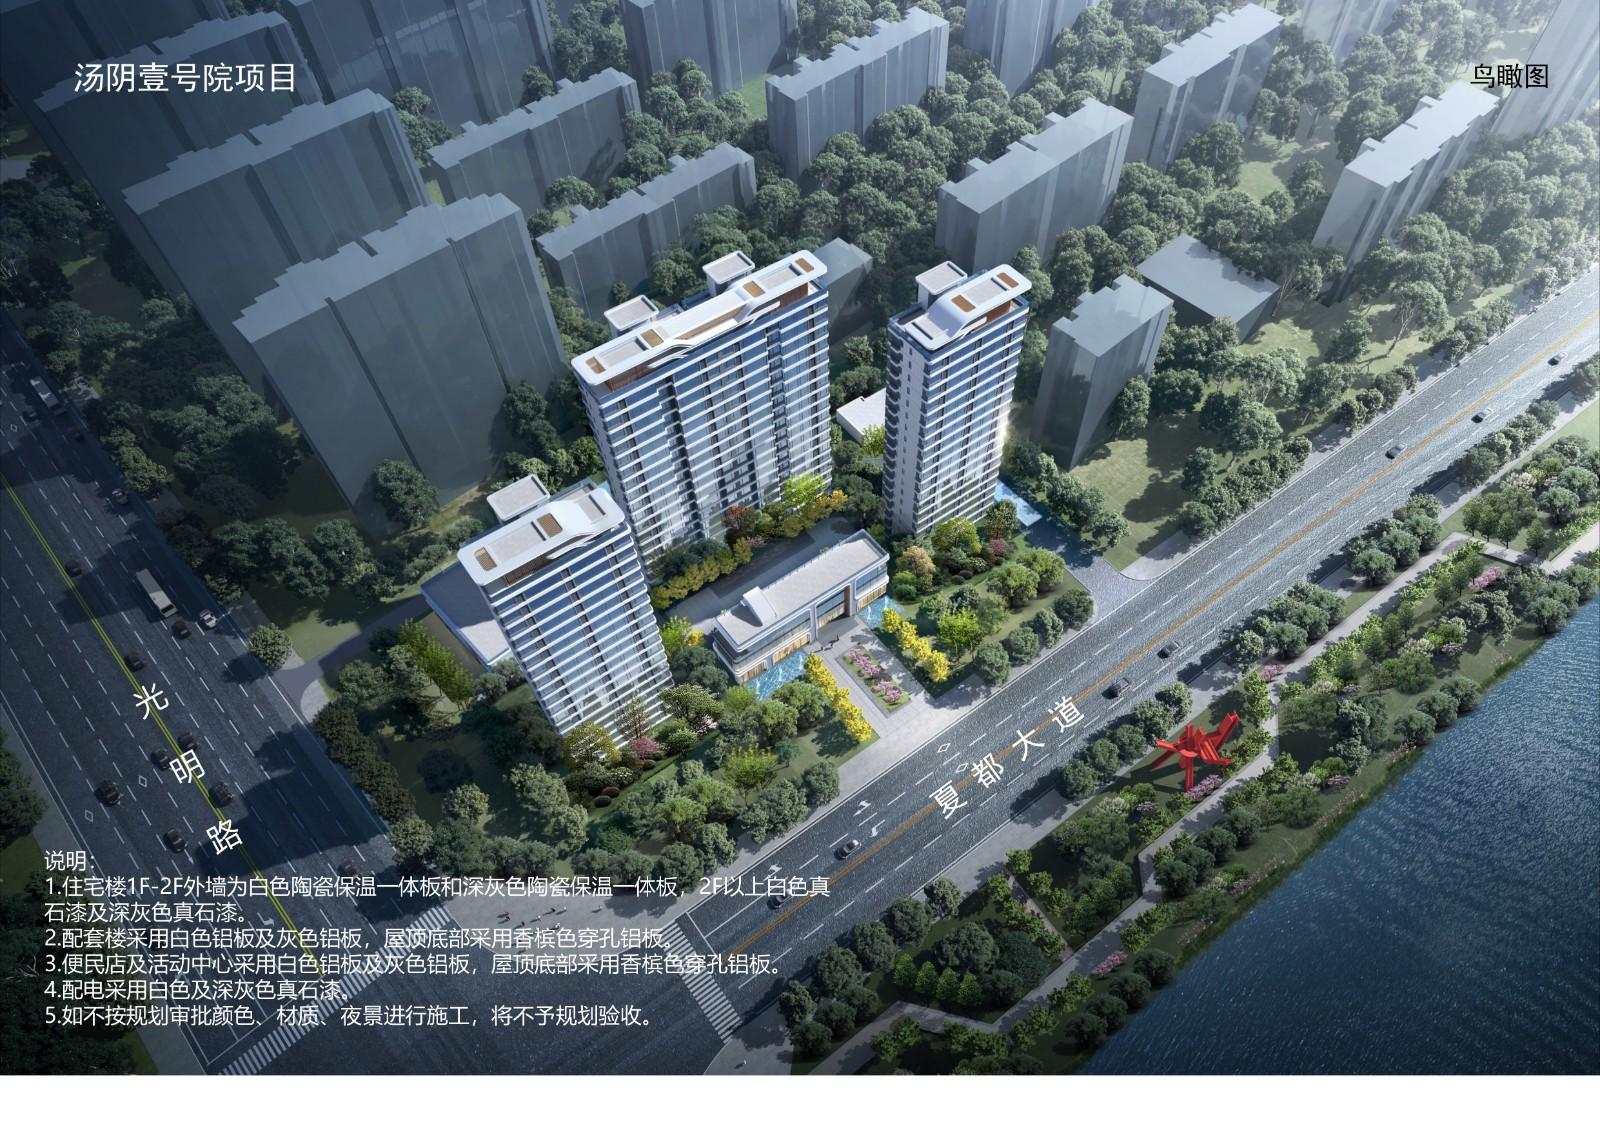 汤阴县城乡规划发展中心城区规划公示（2020-060号）汤阴建业世和府住宅小区修建性详细规划总平面图、效果图